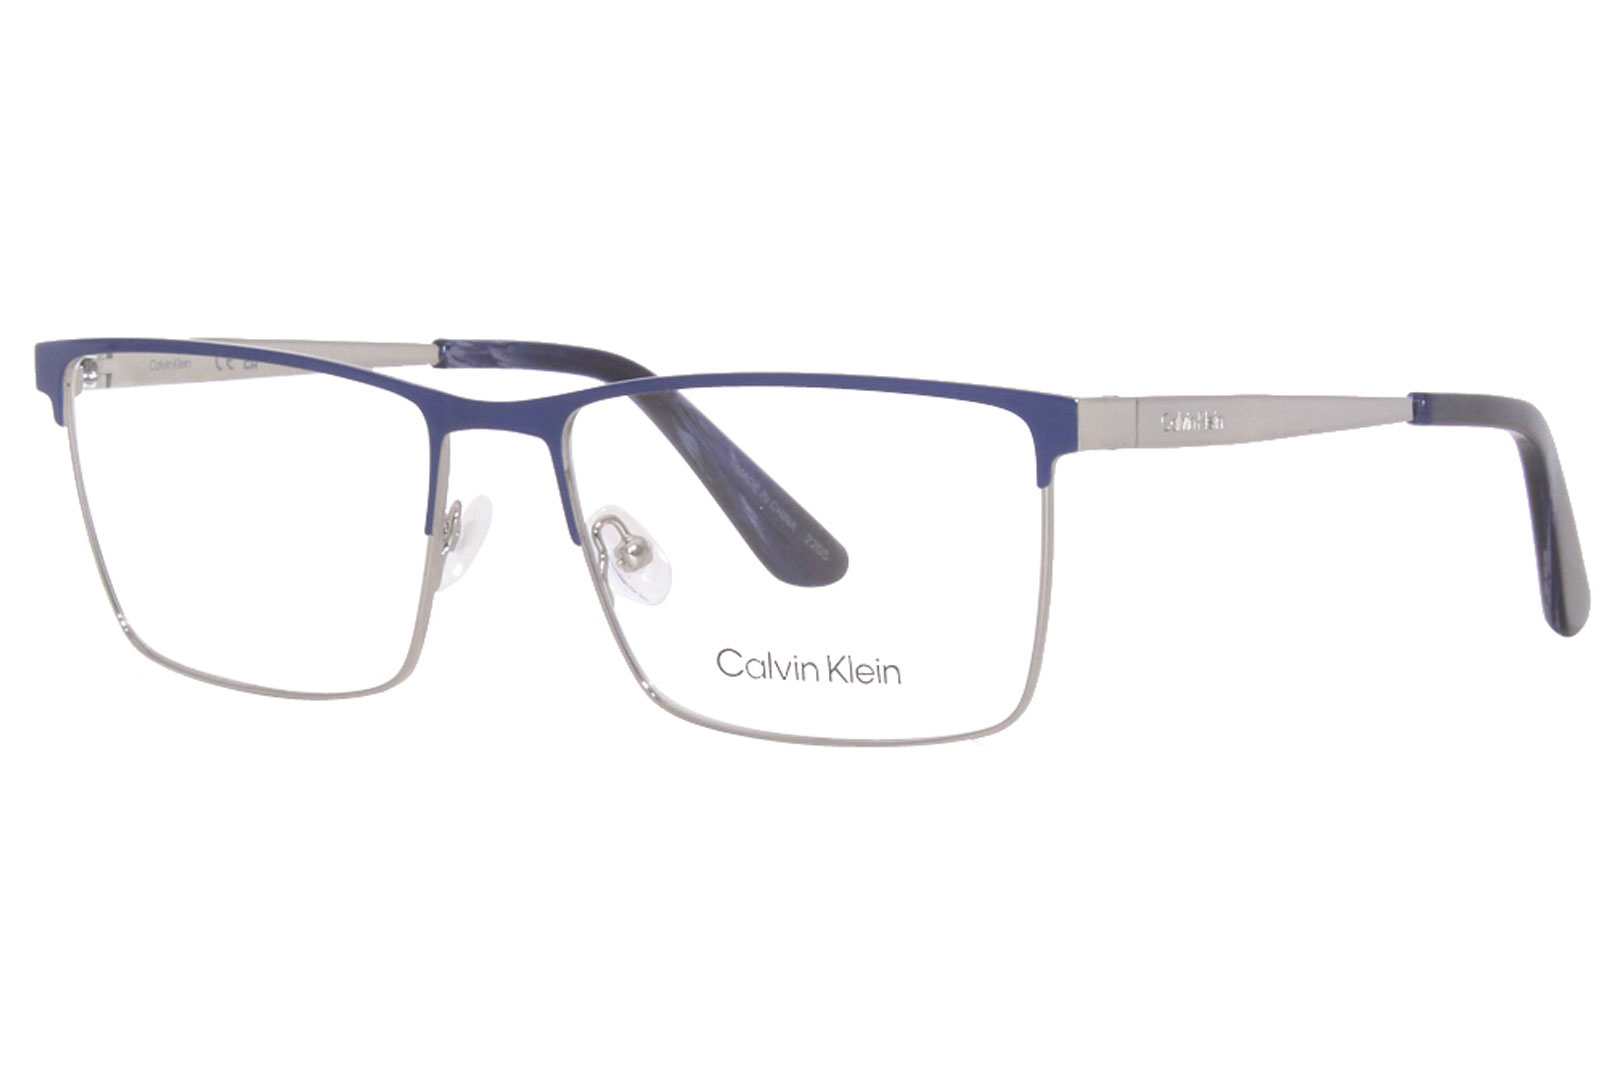 Calvin Klein CK22102 460 Eyeglasses Men's Blue/Gunmetal Full Rim 57-17-145  